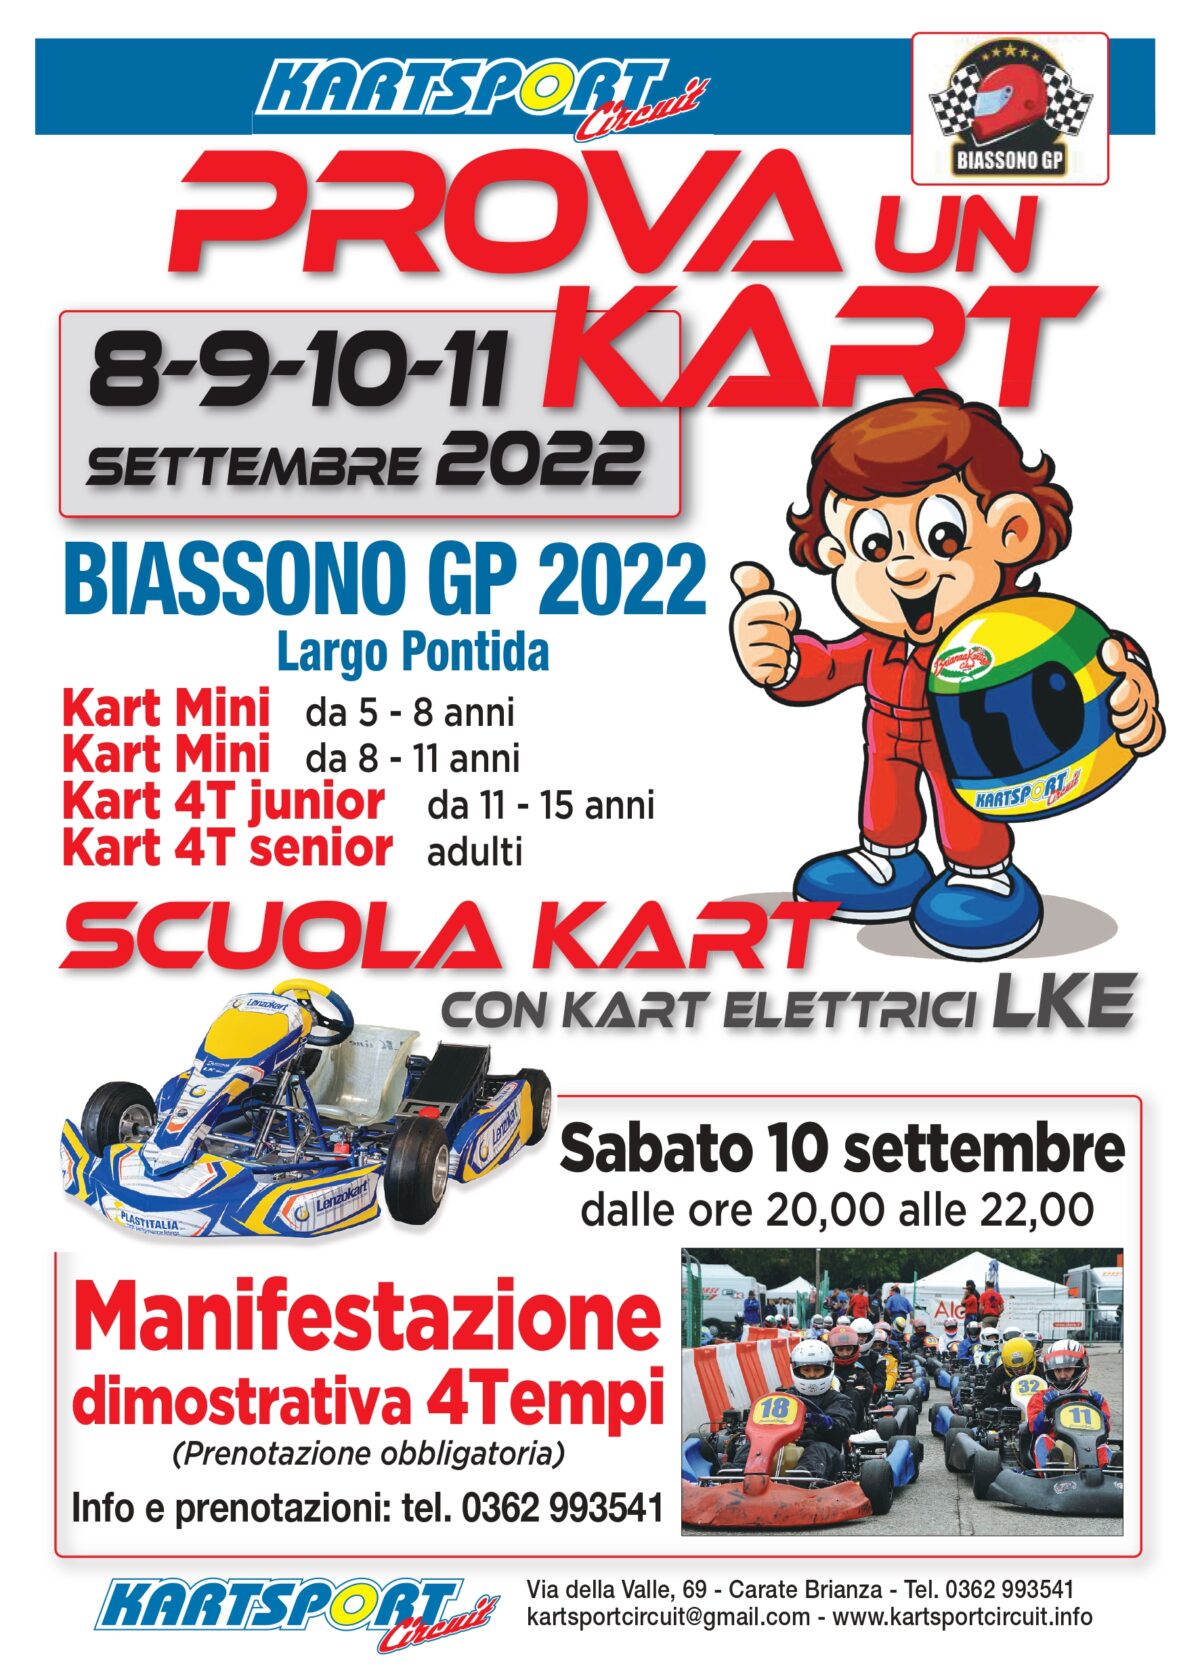 8-9-10-11 Settembre 2022 Biassono GP